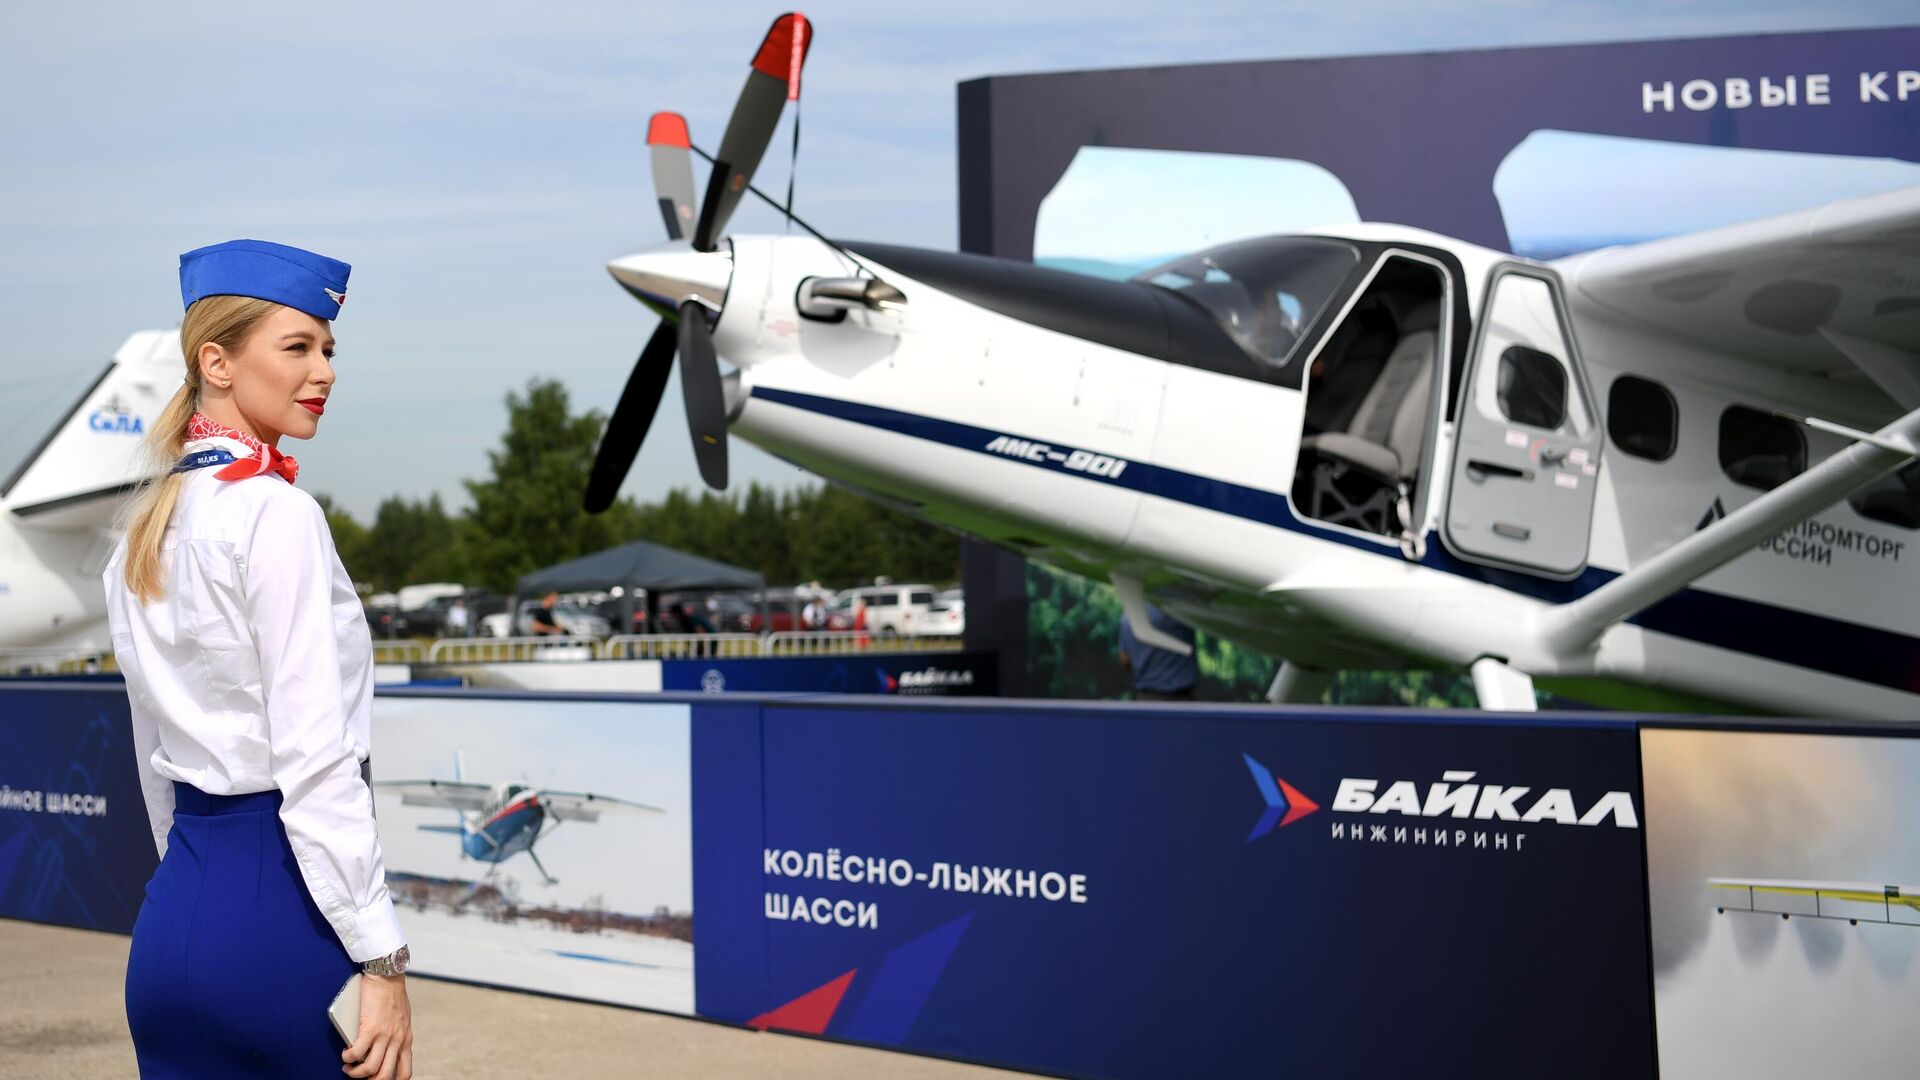 Российский многоцелевой самолет "Байкал" совершил первый полет